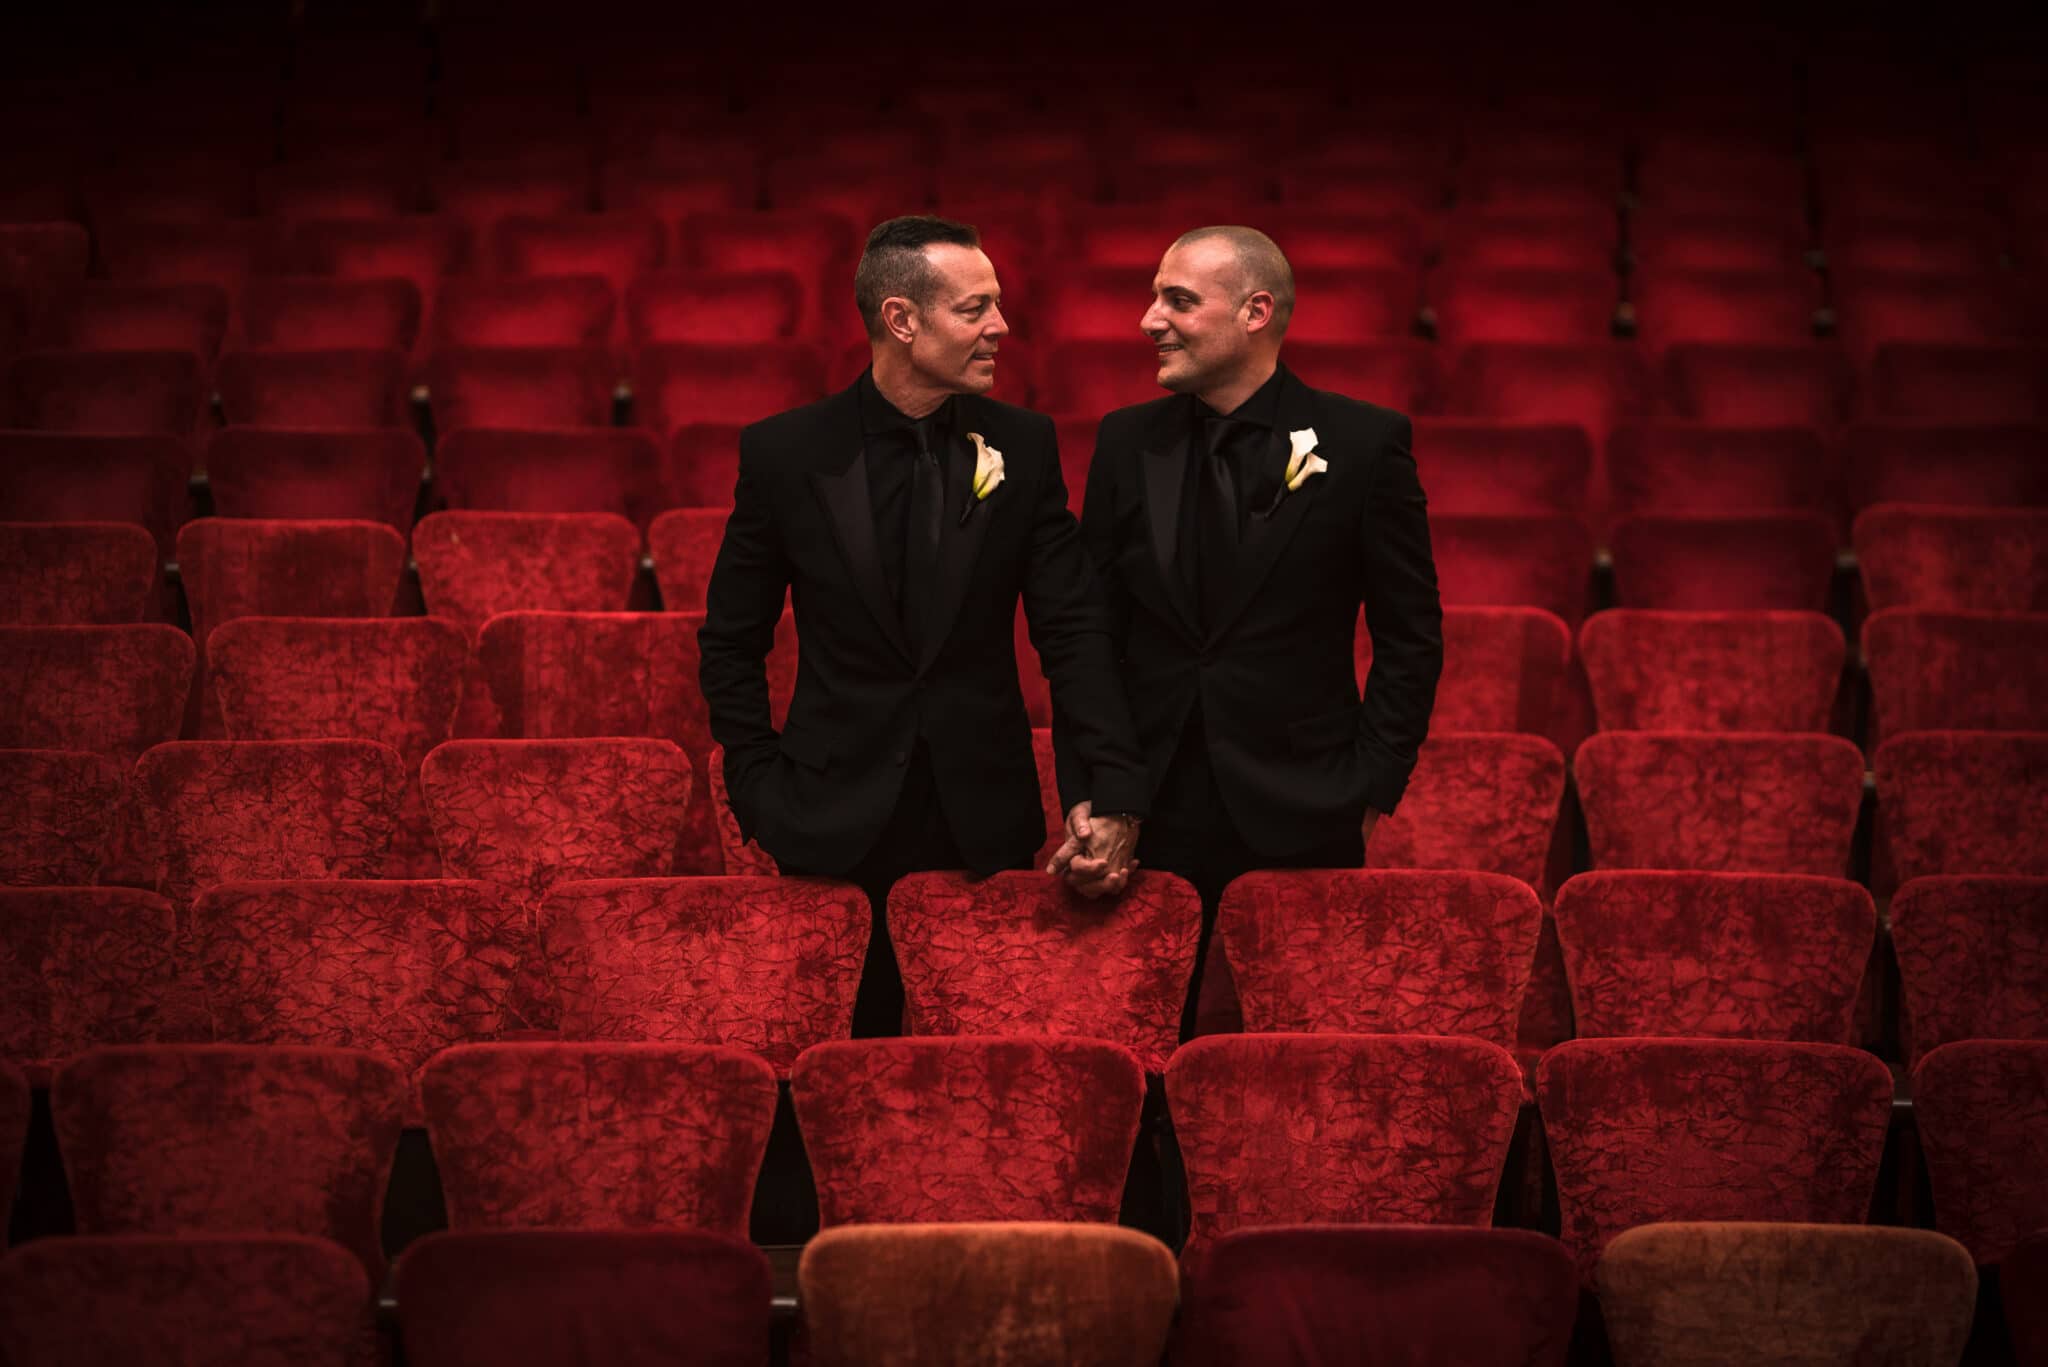 grooms standing in theatre seats